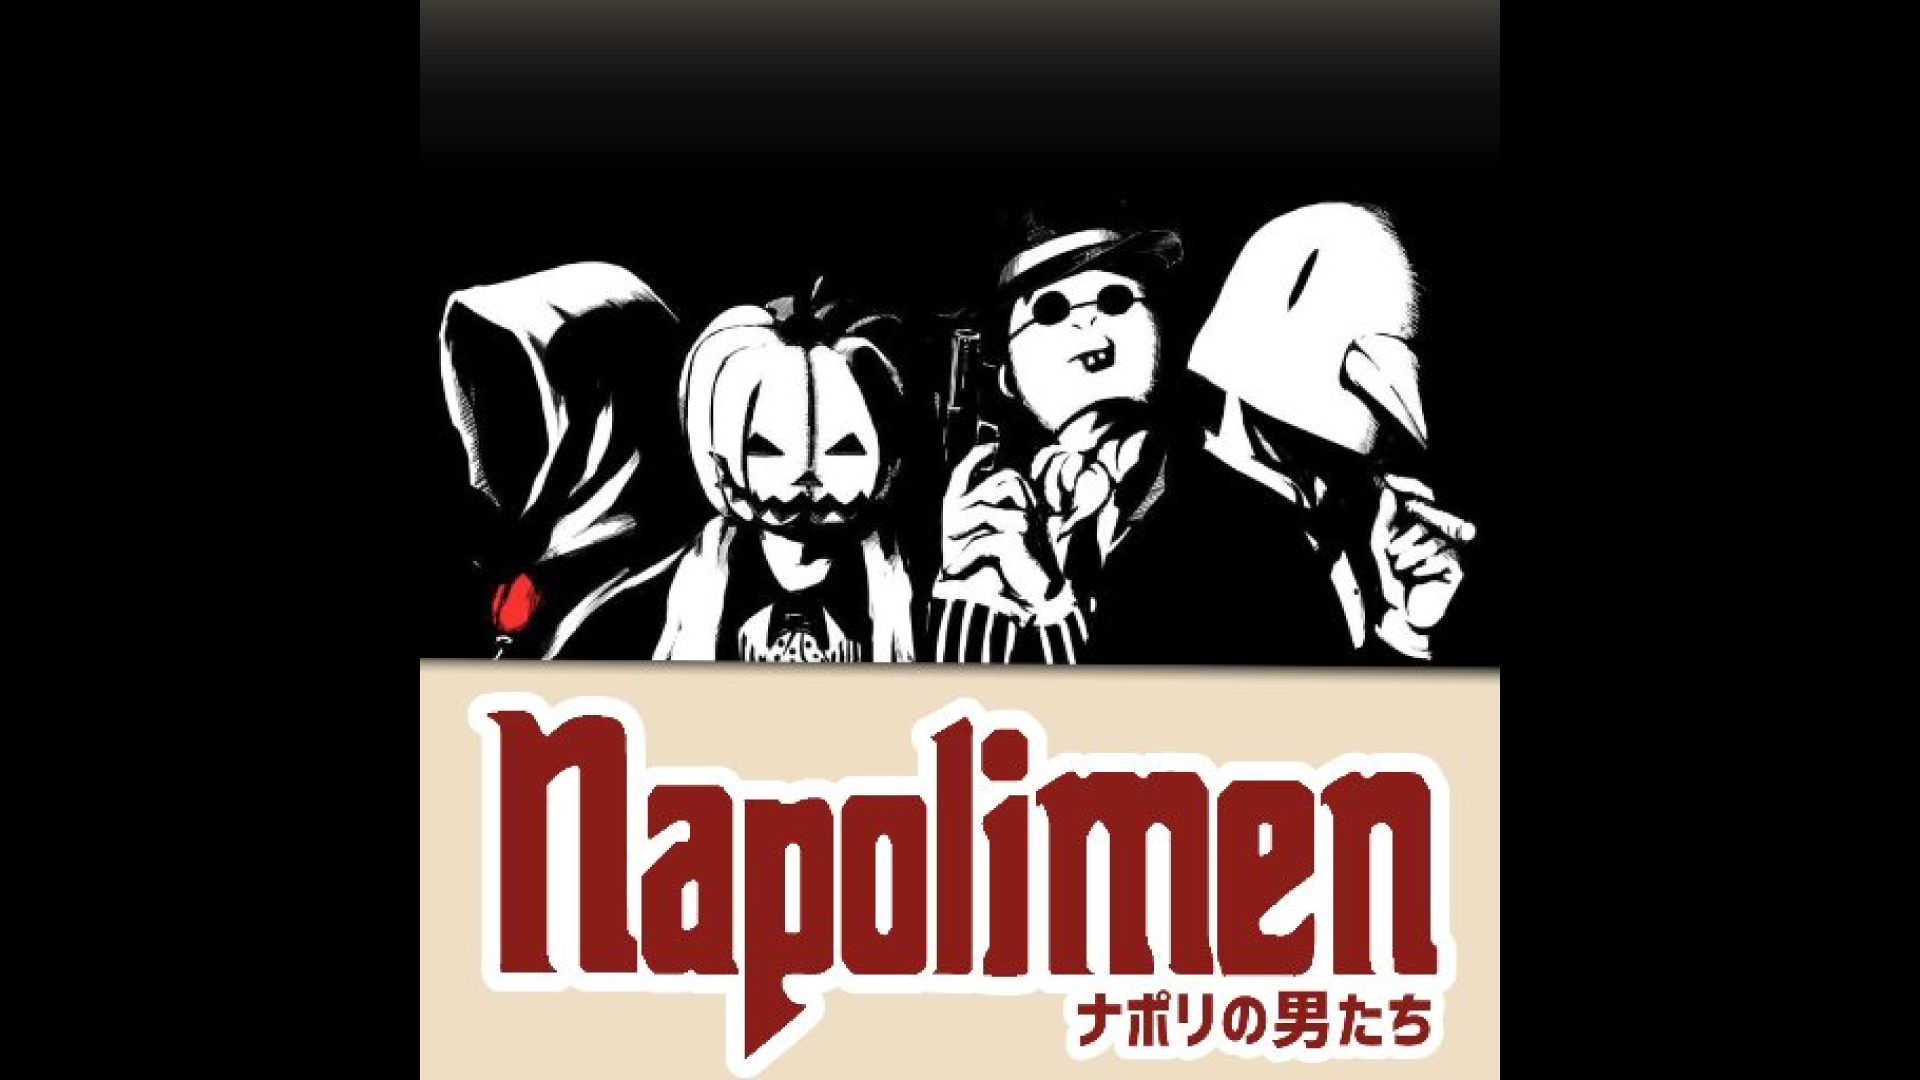 ナポリの男たち 動画製作者のためのフリーフォント集 ゲーム実況フォント